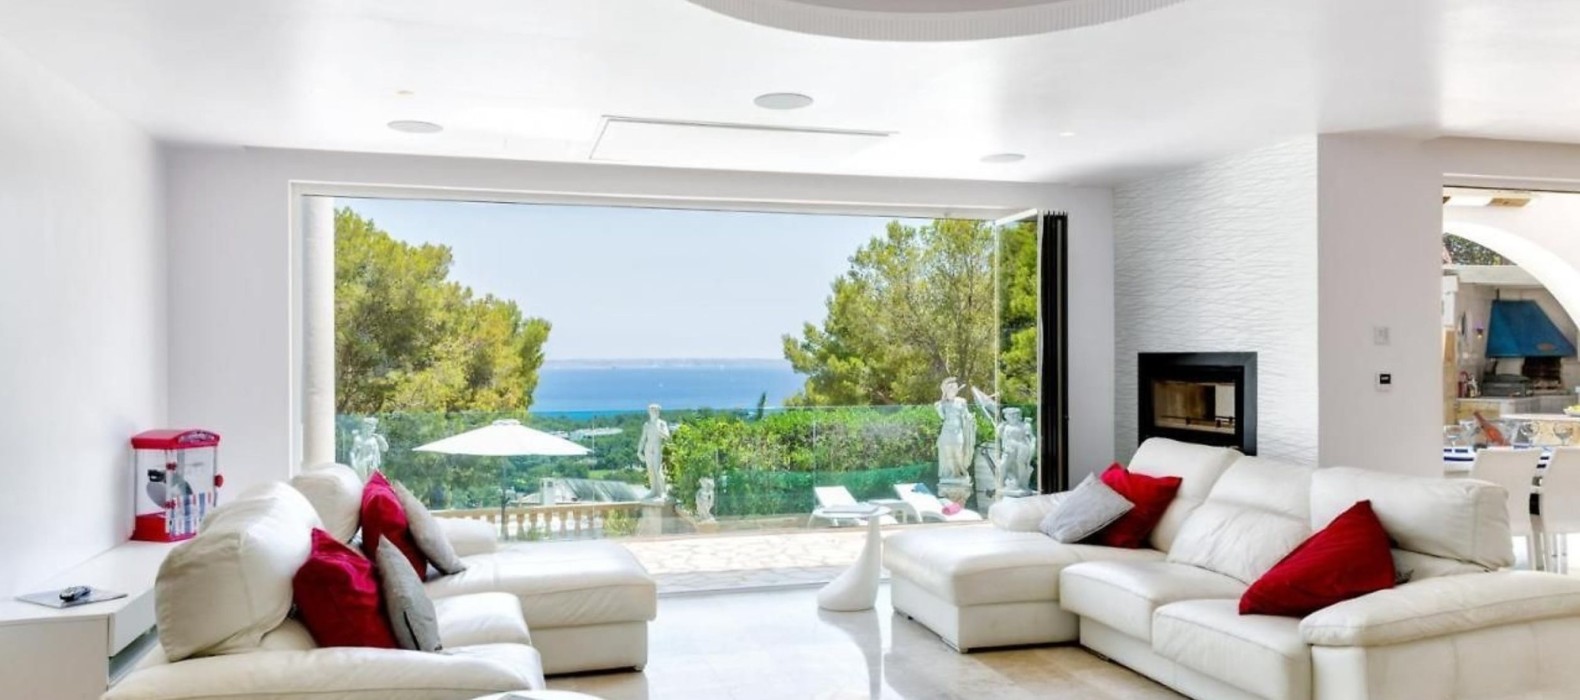 Living room of Villa White Ginger in Mallorca